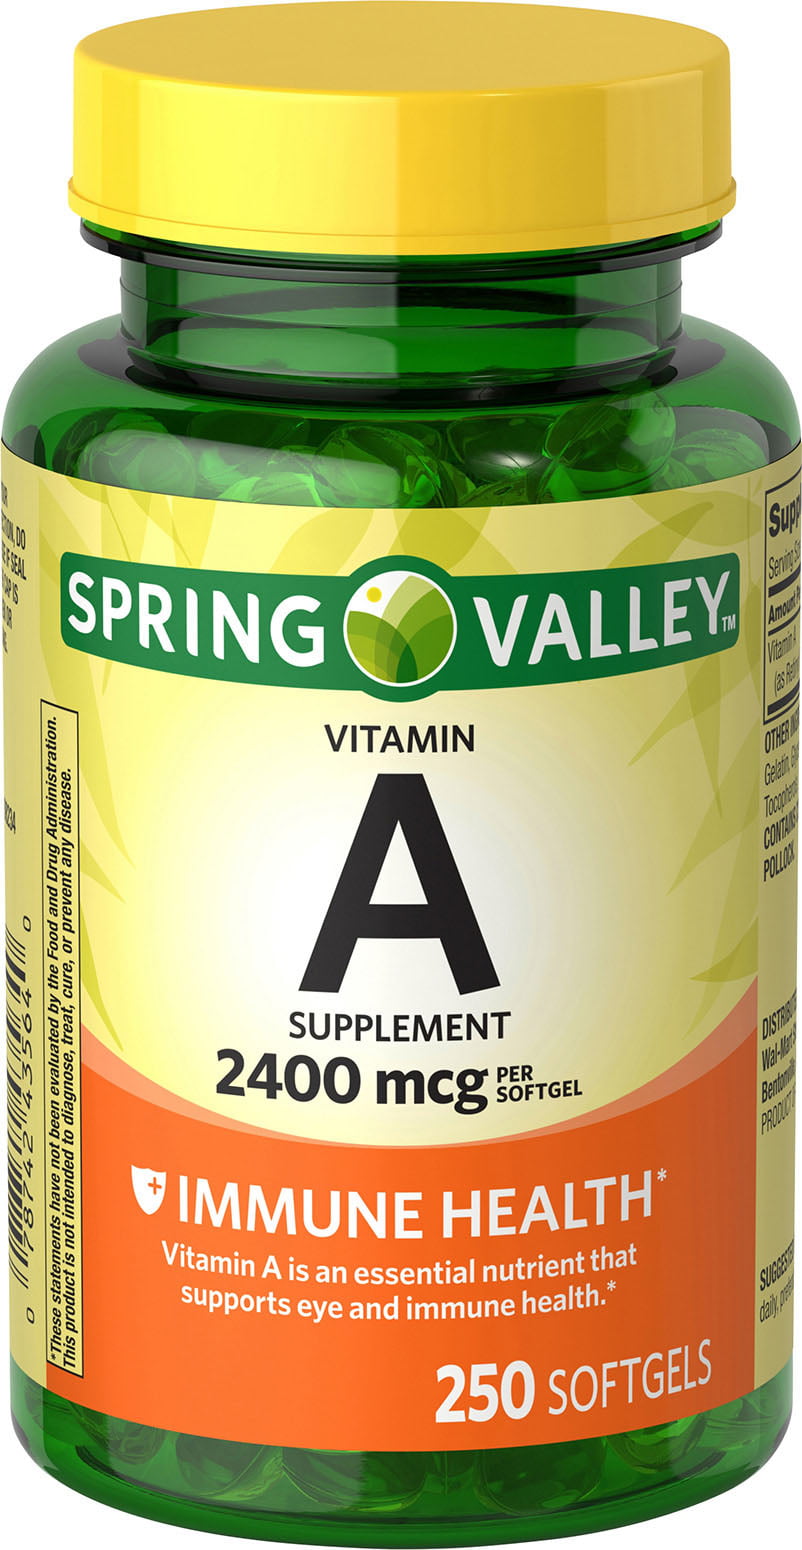 Nature Valley Vitamins Reviews